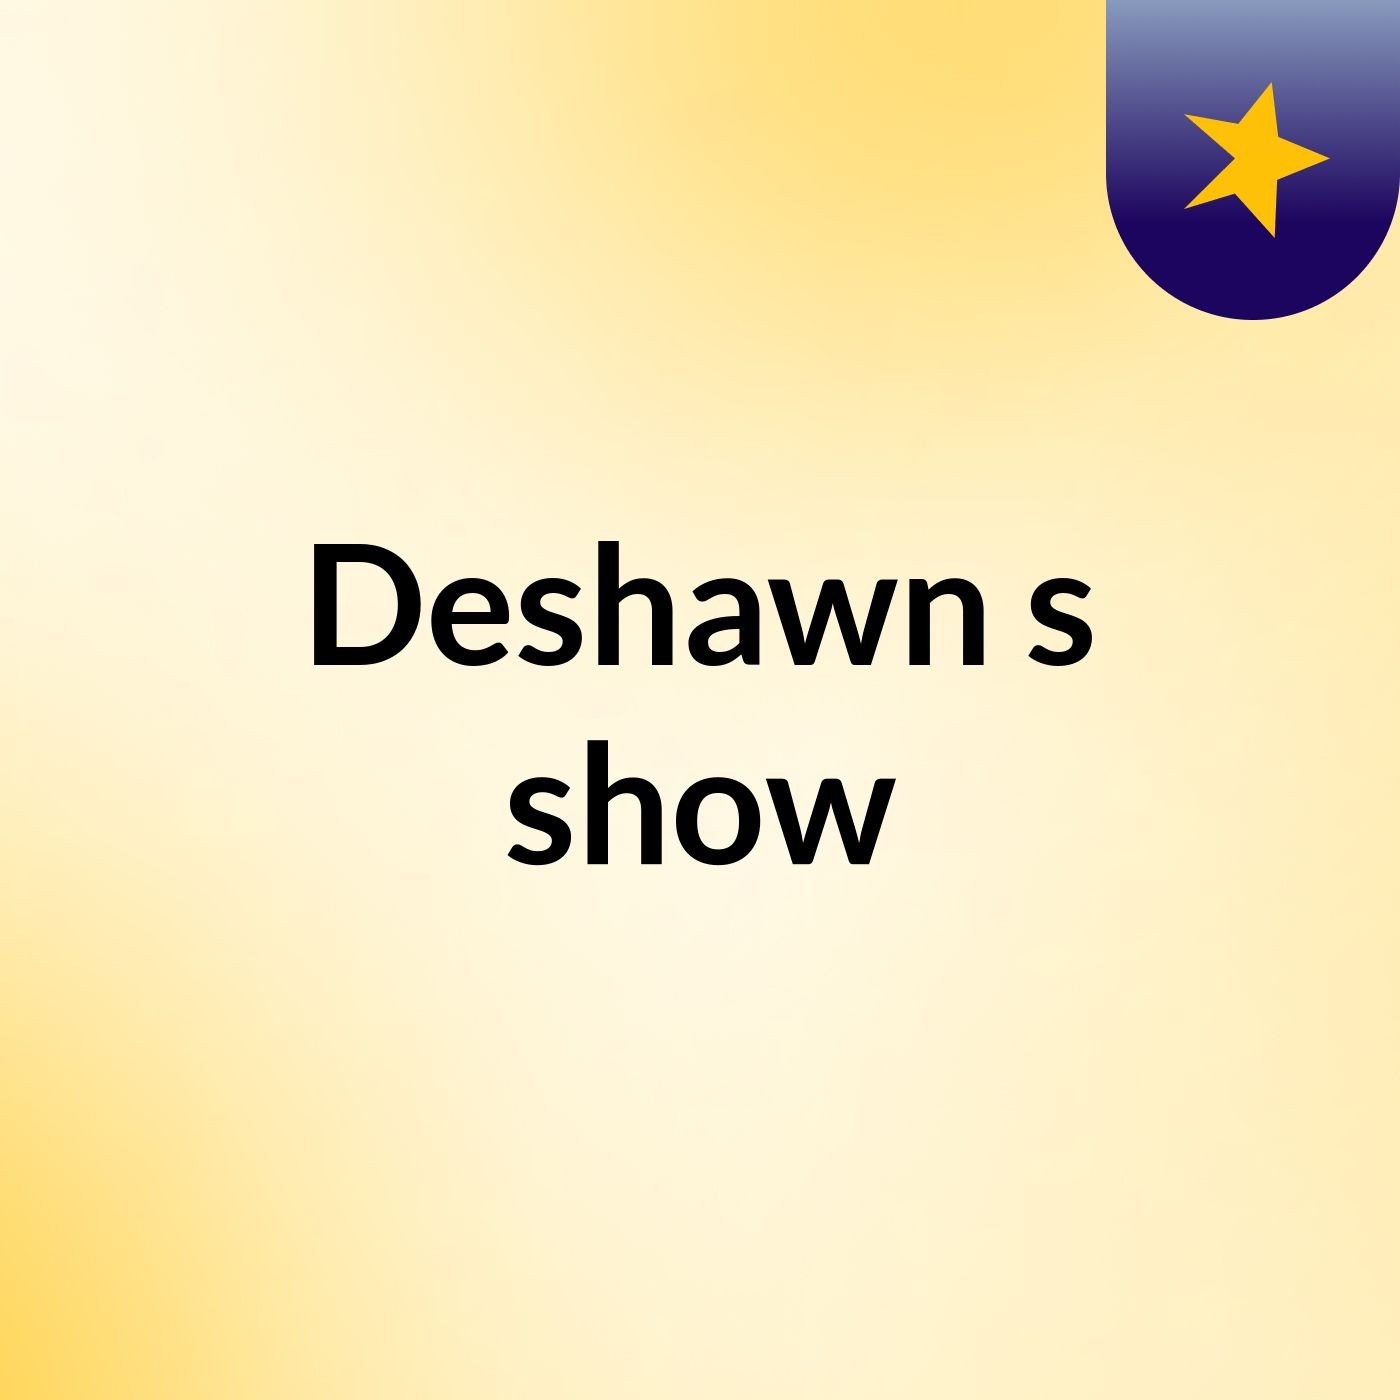 Episode 6 - Deshawn's show